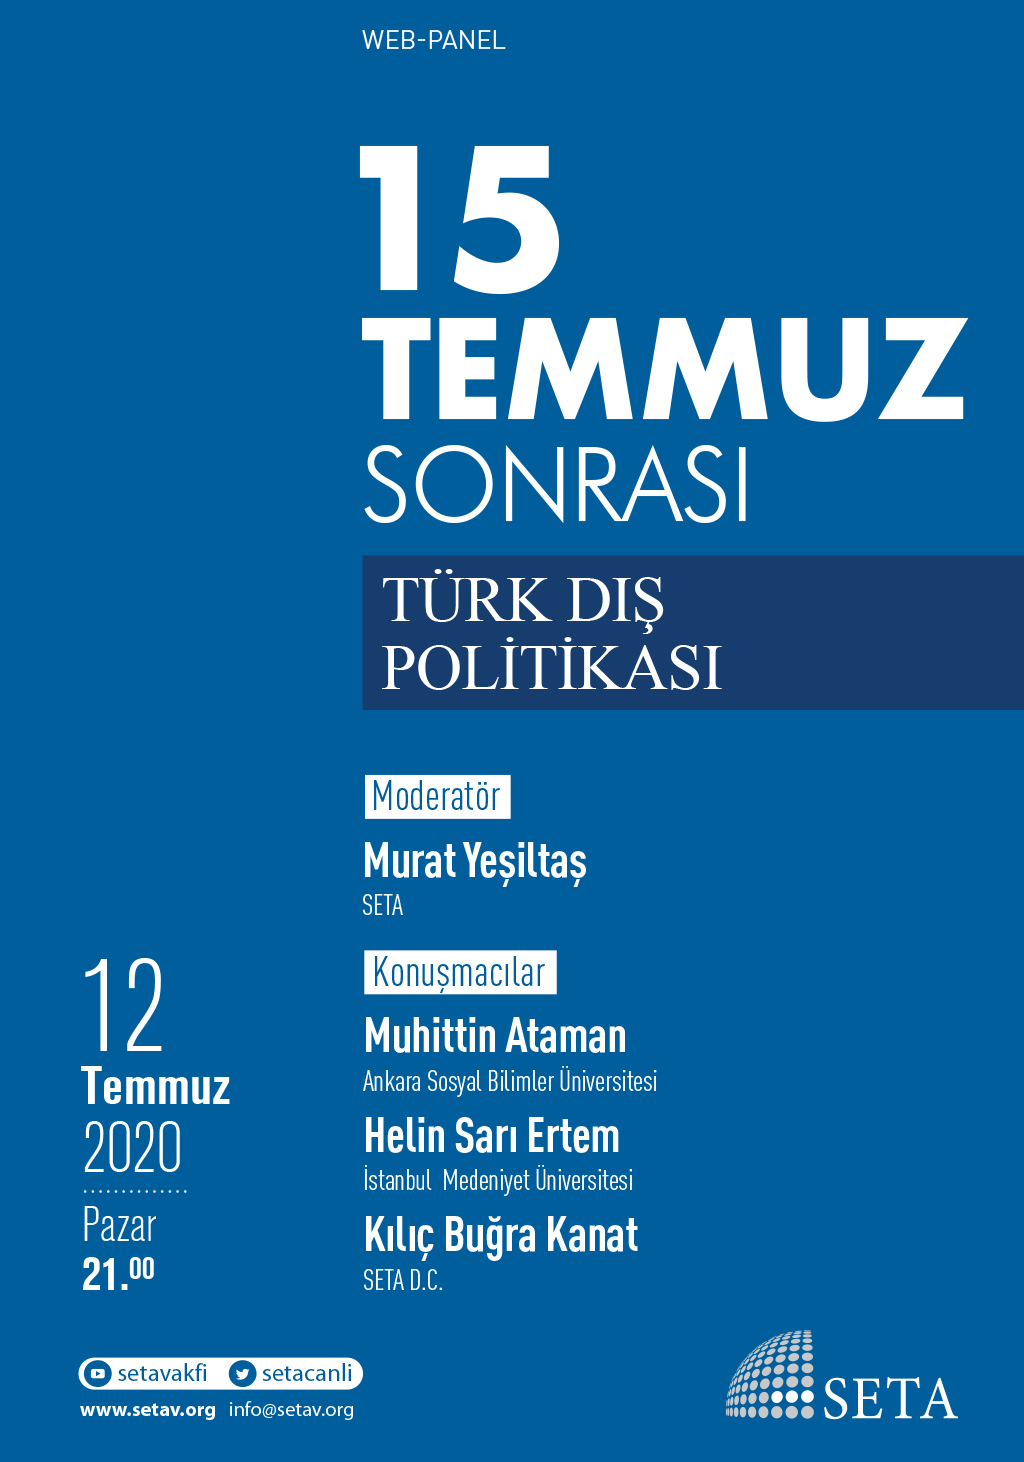 15 Temmuz Sonrası Türk Dış Politikası